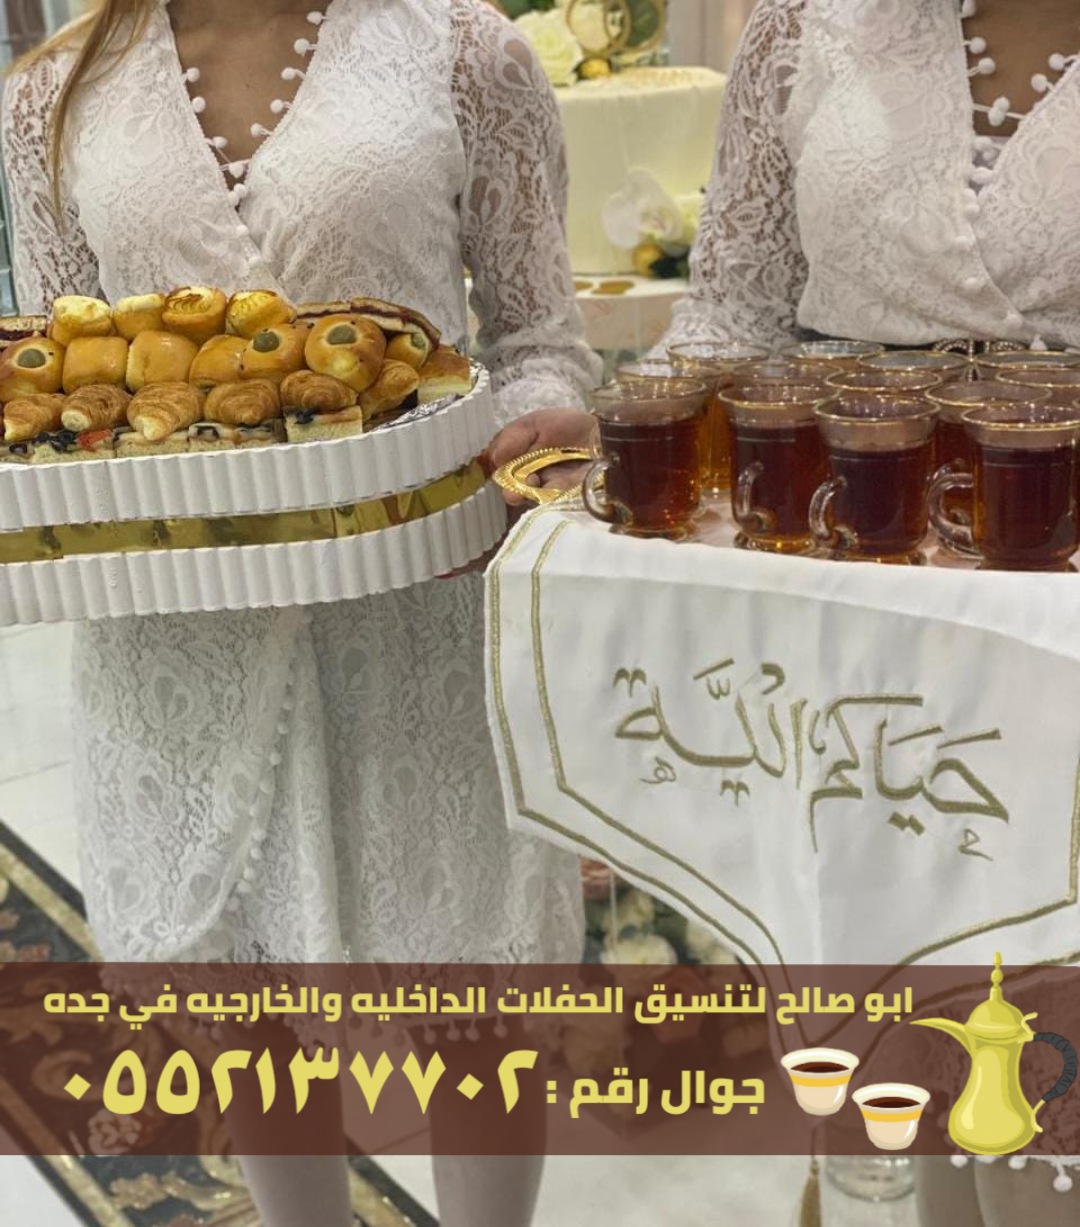 صبابين قهوة و قهوجيات في جدة, 0552137702 P_2466ph3fv7